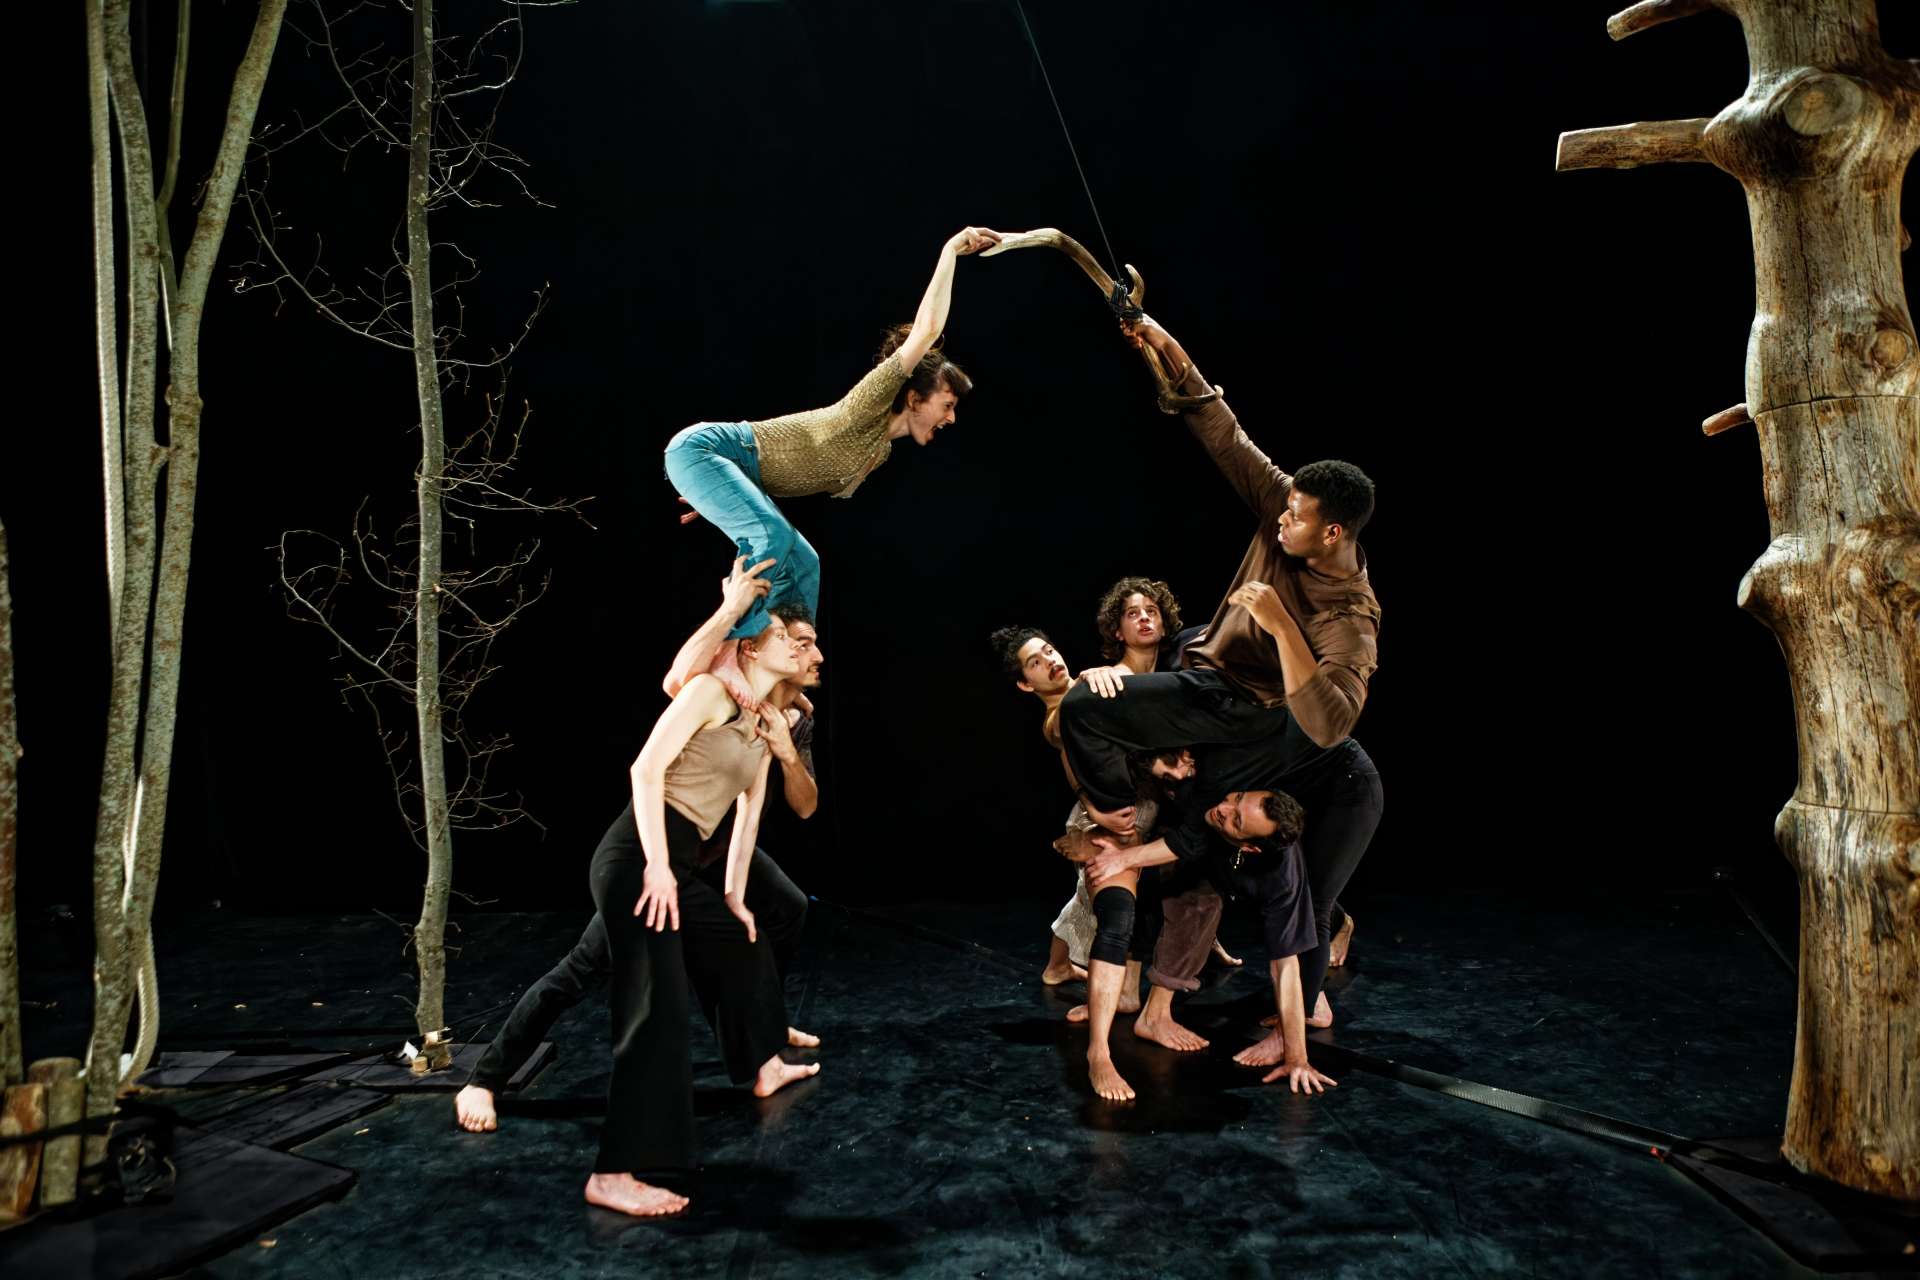 Des acrobates évoluent sur scène dans une forêt d'arbres